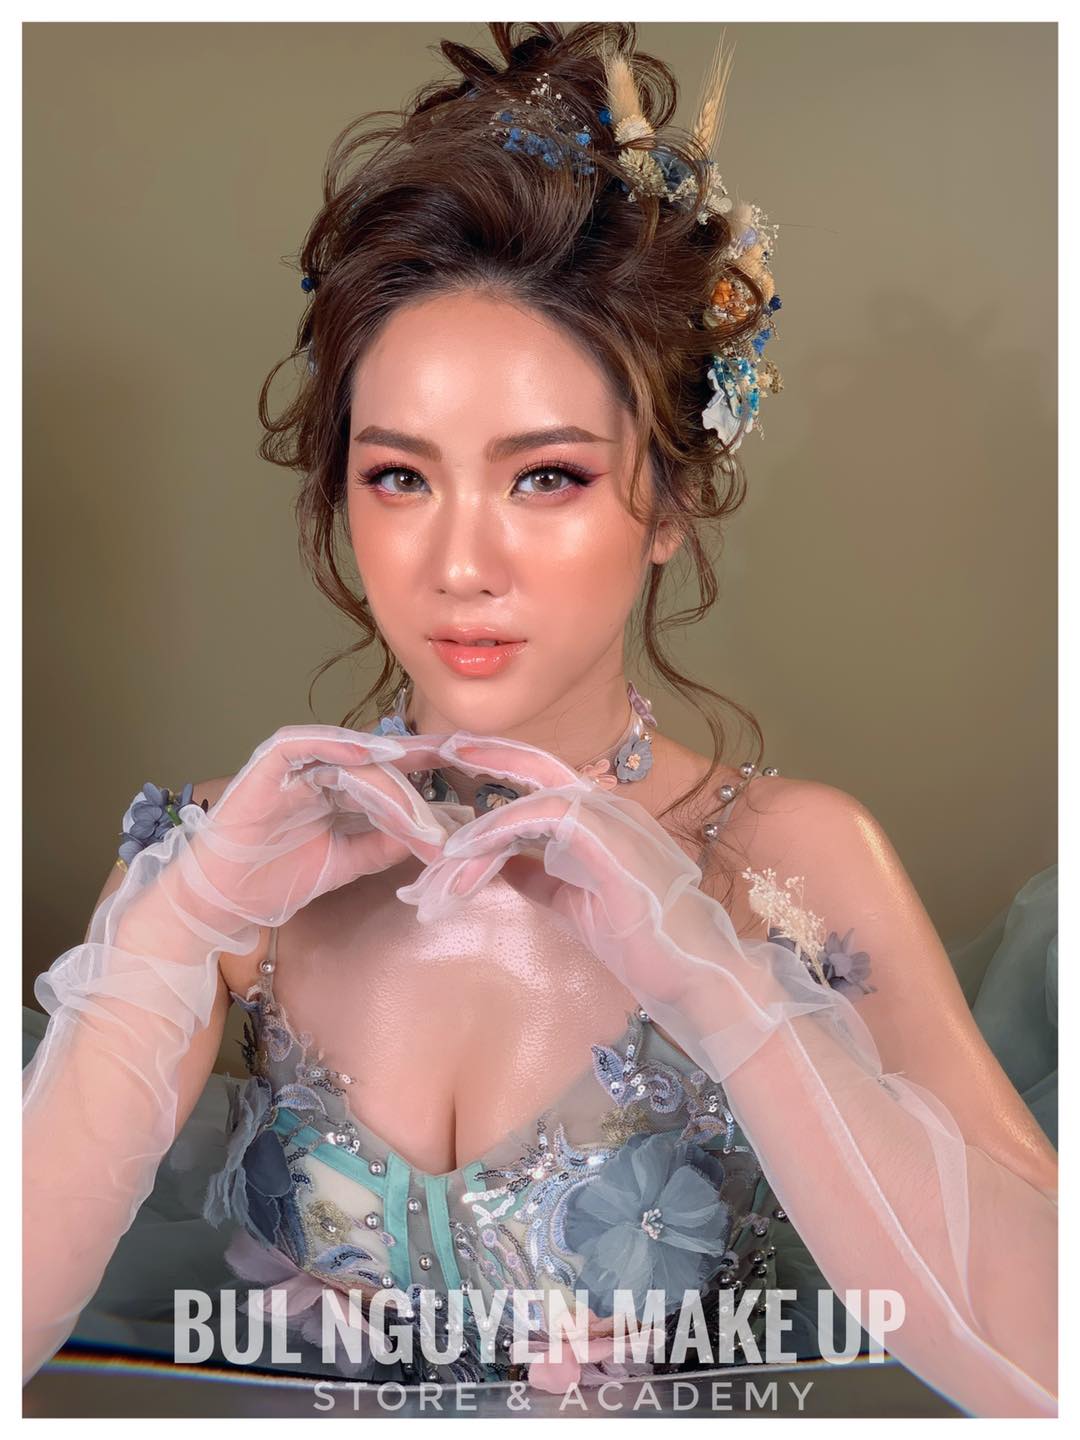 Top 7 tiệm trang điểm cô dâu đẹp nhất tại Hà Nội -  Bul Nguyễn Make Up